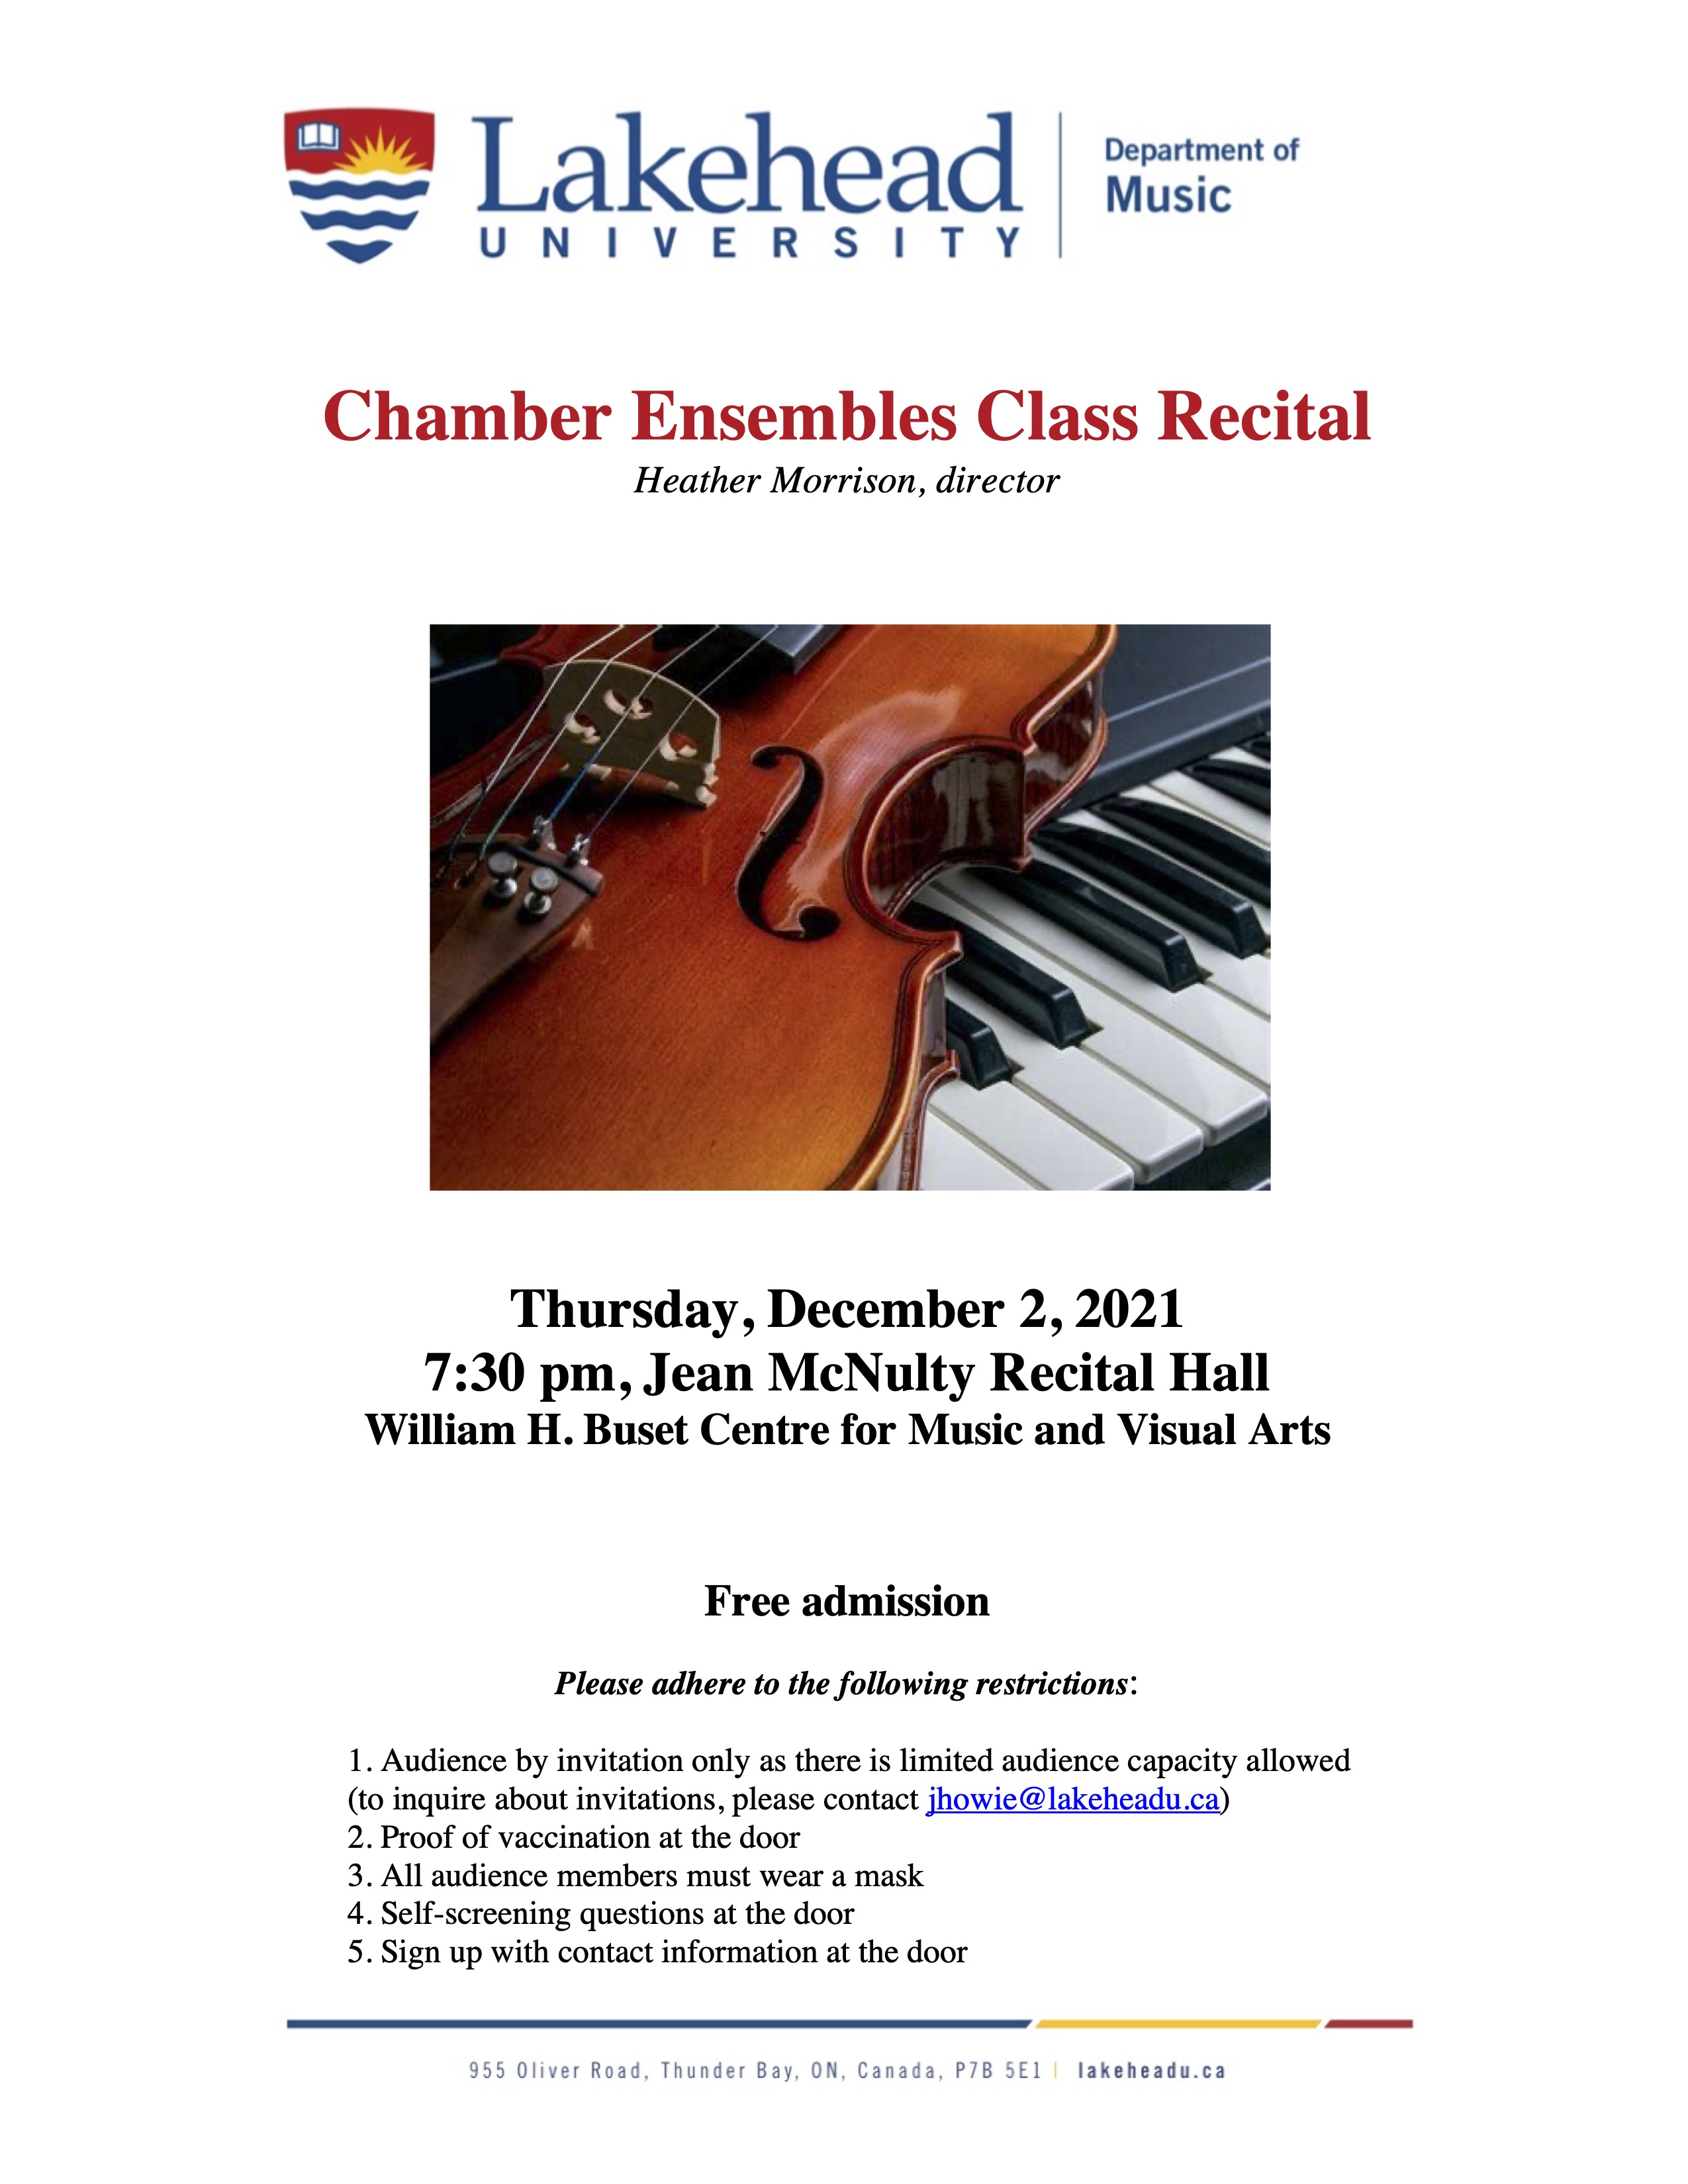 Chamber Ensemble Poster